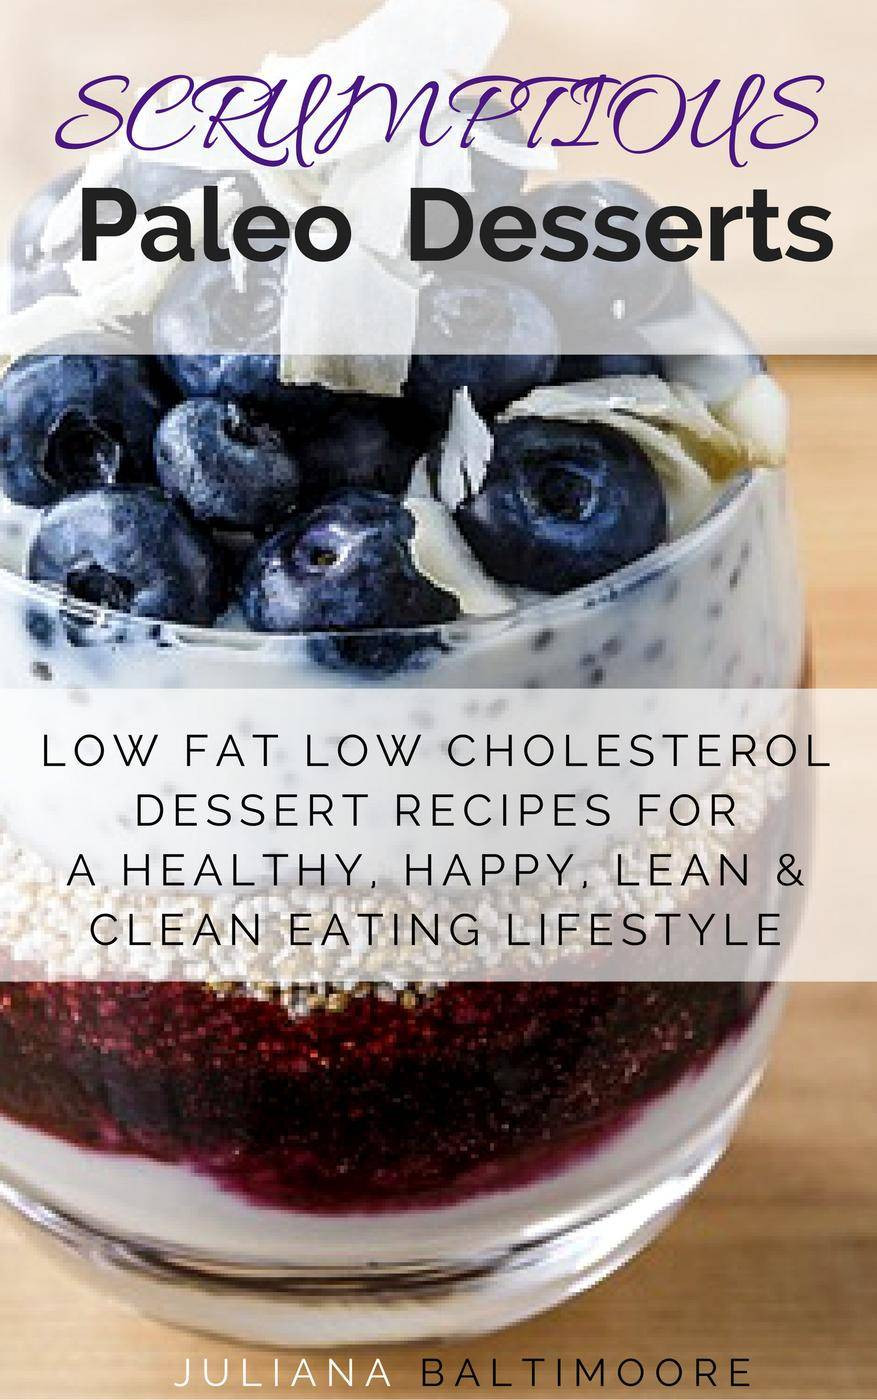 Low Calorie Paleo Desserts
 Scrumptious Paleo Desserts Low Fat Low Cholesterol